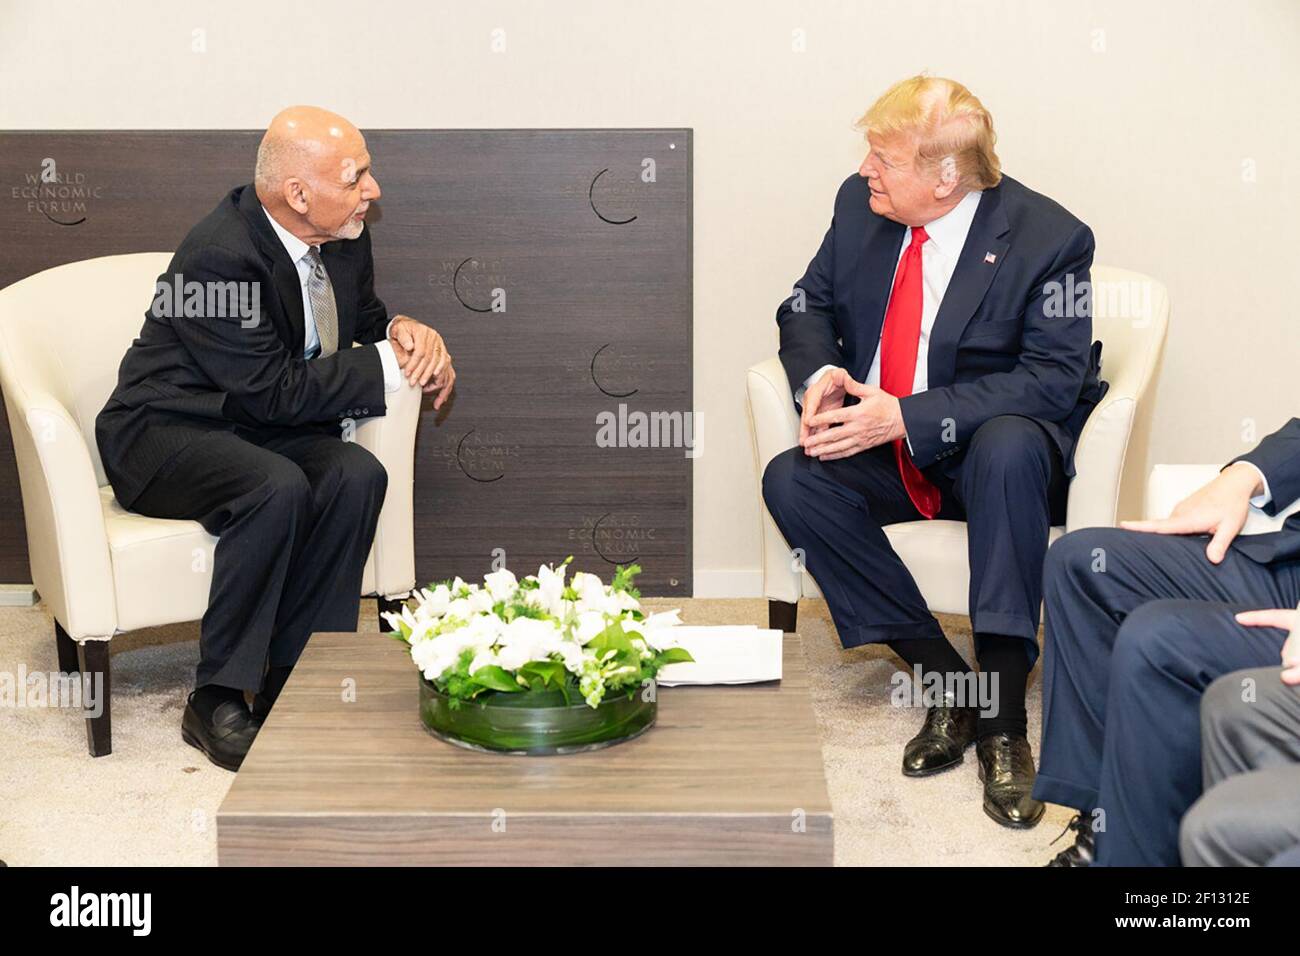 Präsident Donald Trump trifft den Präsidenten der Islamischen Republik Afghanistan Ashraf Ghani Mittwoch, 22 2020. Januar, im Davos Congress Center in Davos Schweiz. Stockfoto